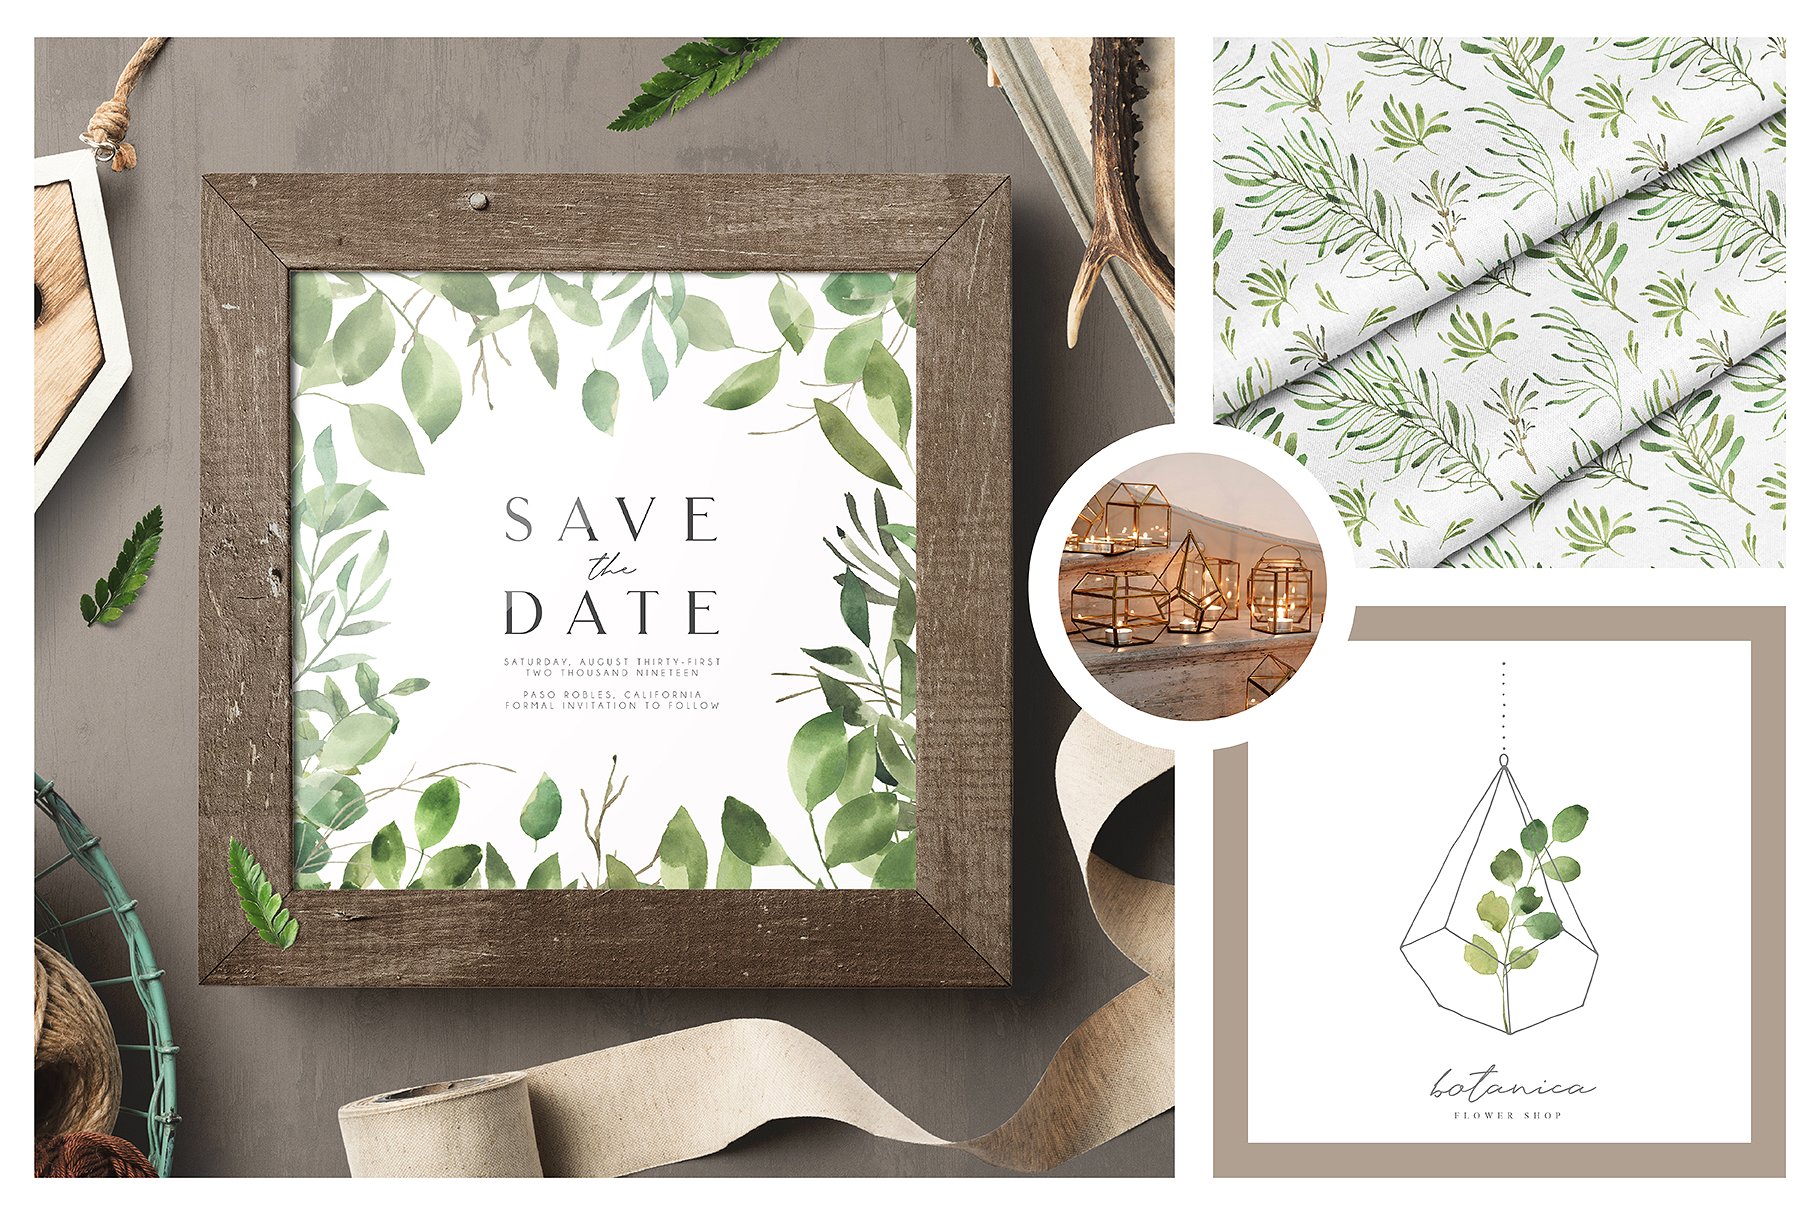 水彩树叶元素、相框、纹理素材包 Leafy Leaf Collection插图(1)